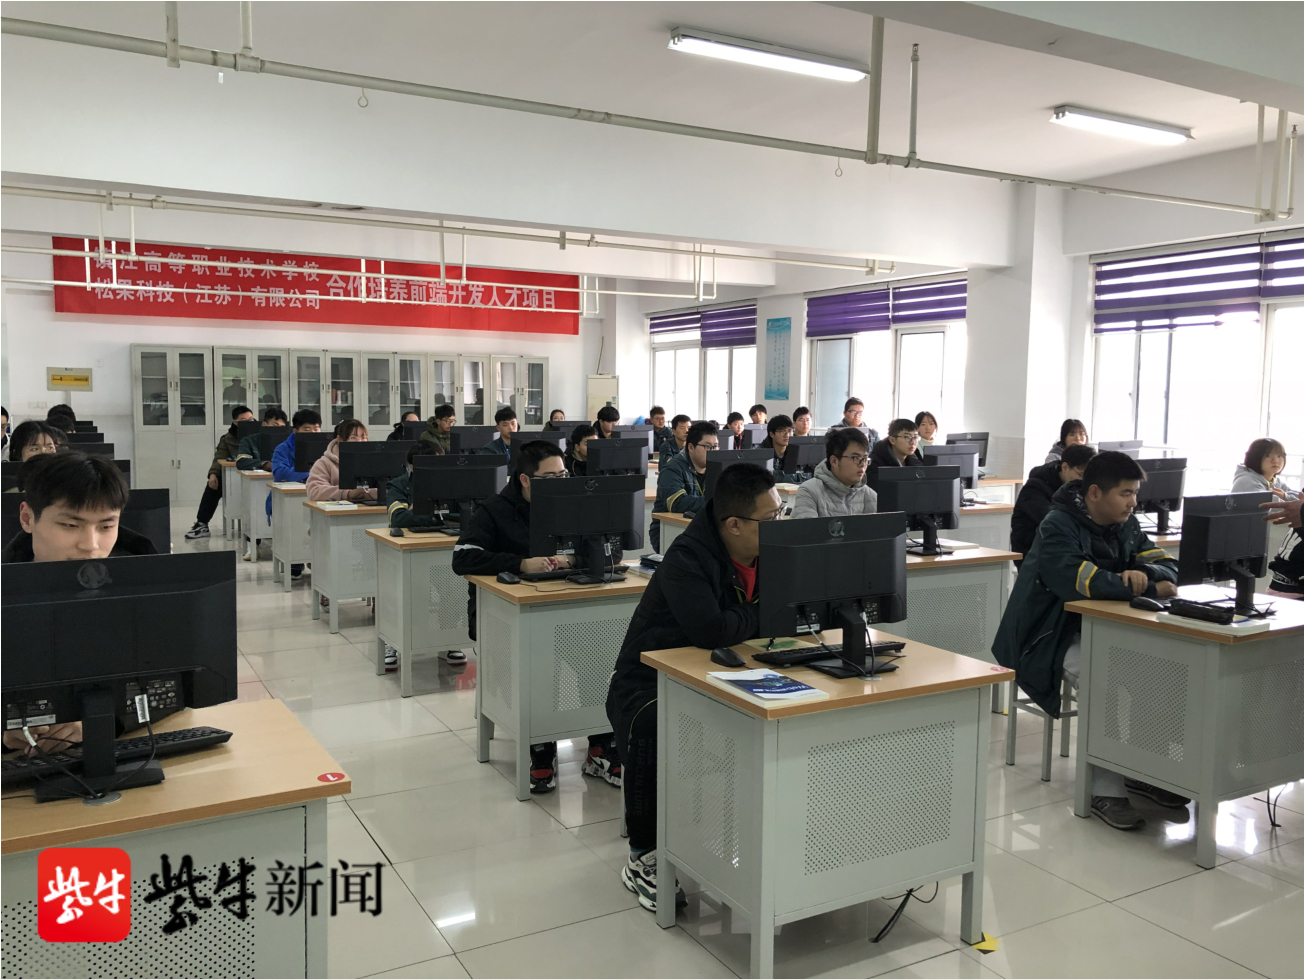 携手科技企业,镇江高职校启动"工程师与项目打包入校"